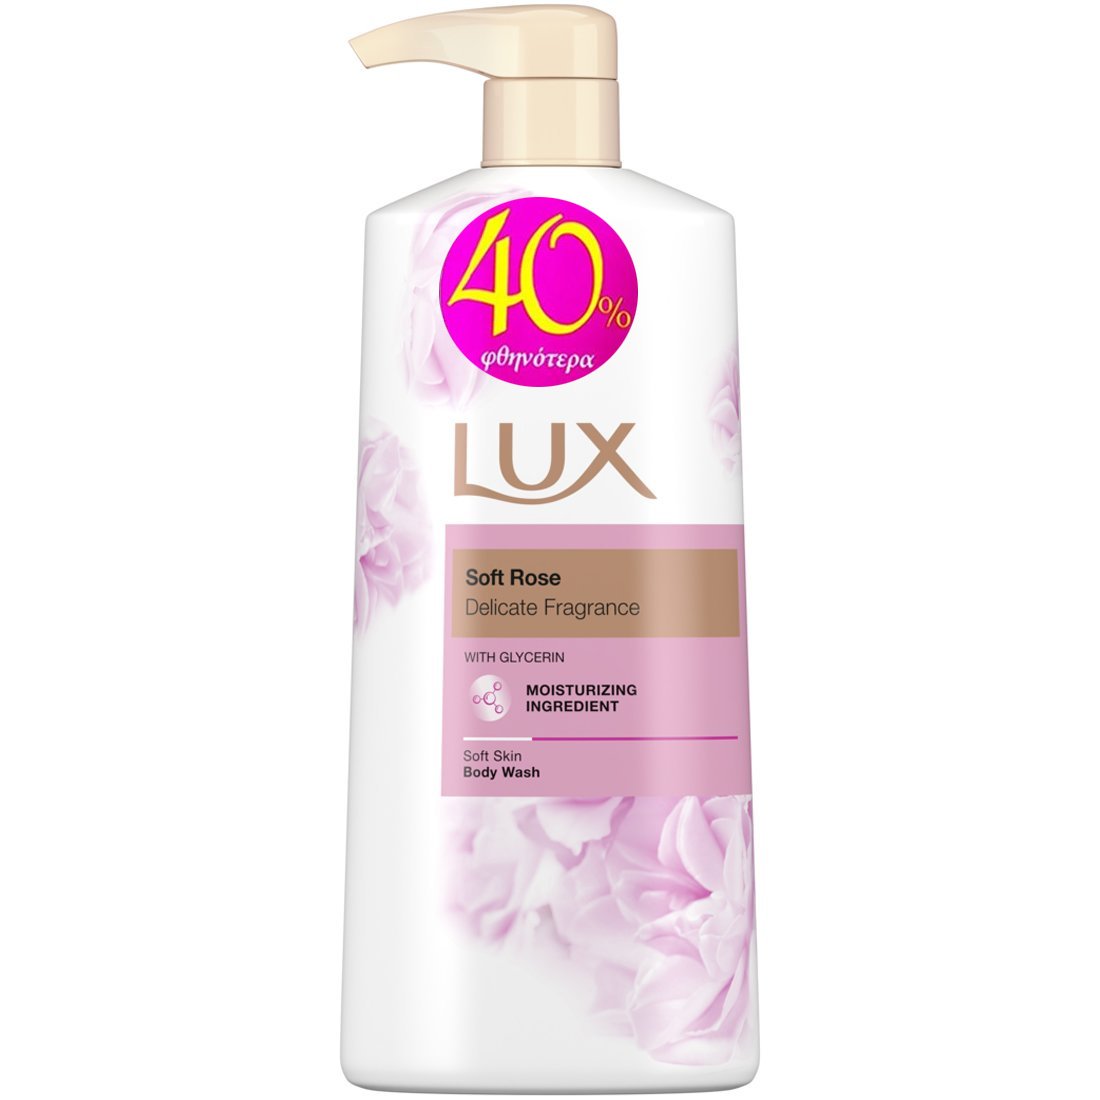 Lux Soft Rose Delicate Fragrance Body Wash 600ml Promo -40%,Αφρόλουτρο με Γοητευτικό Άρωμα από Άνθη Εξωτικών Λουλουδιών